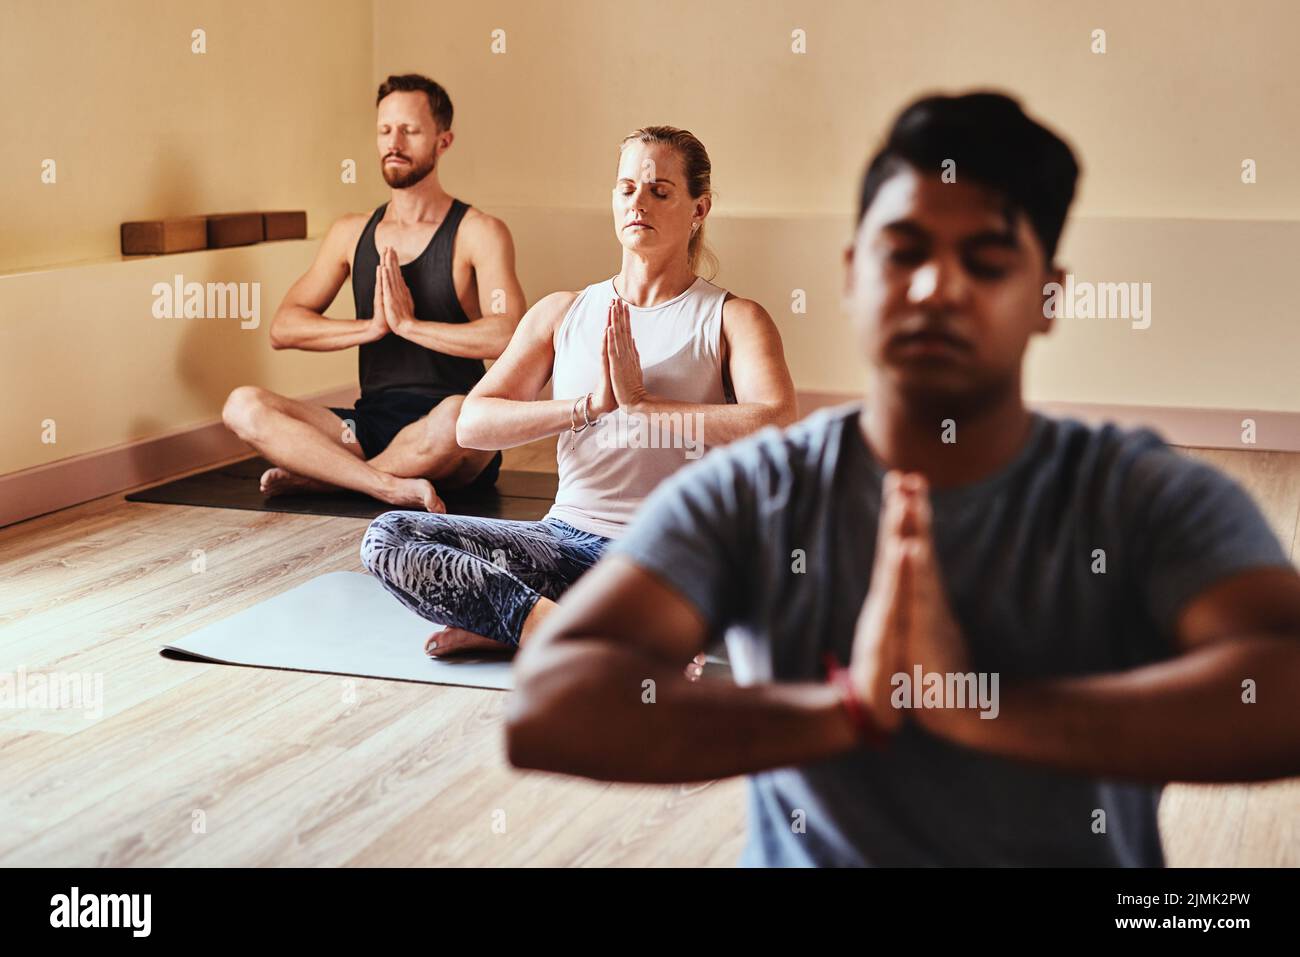 No se necesita nada más. Un grupo de jóvenes que meditan en una clase de yoga. Foto de stock